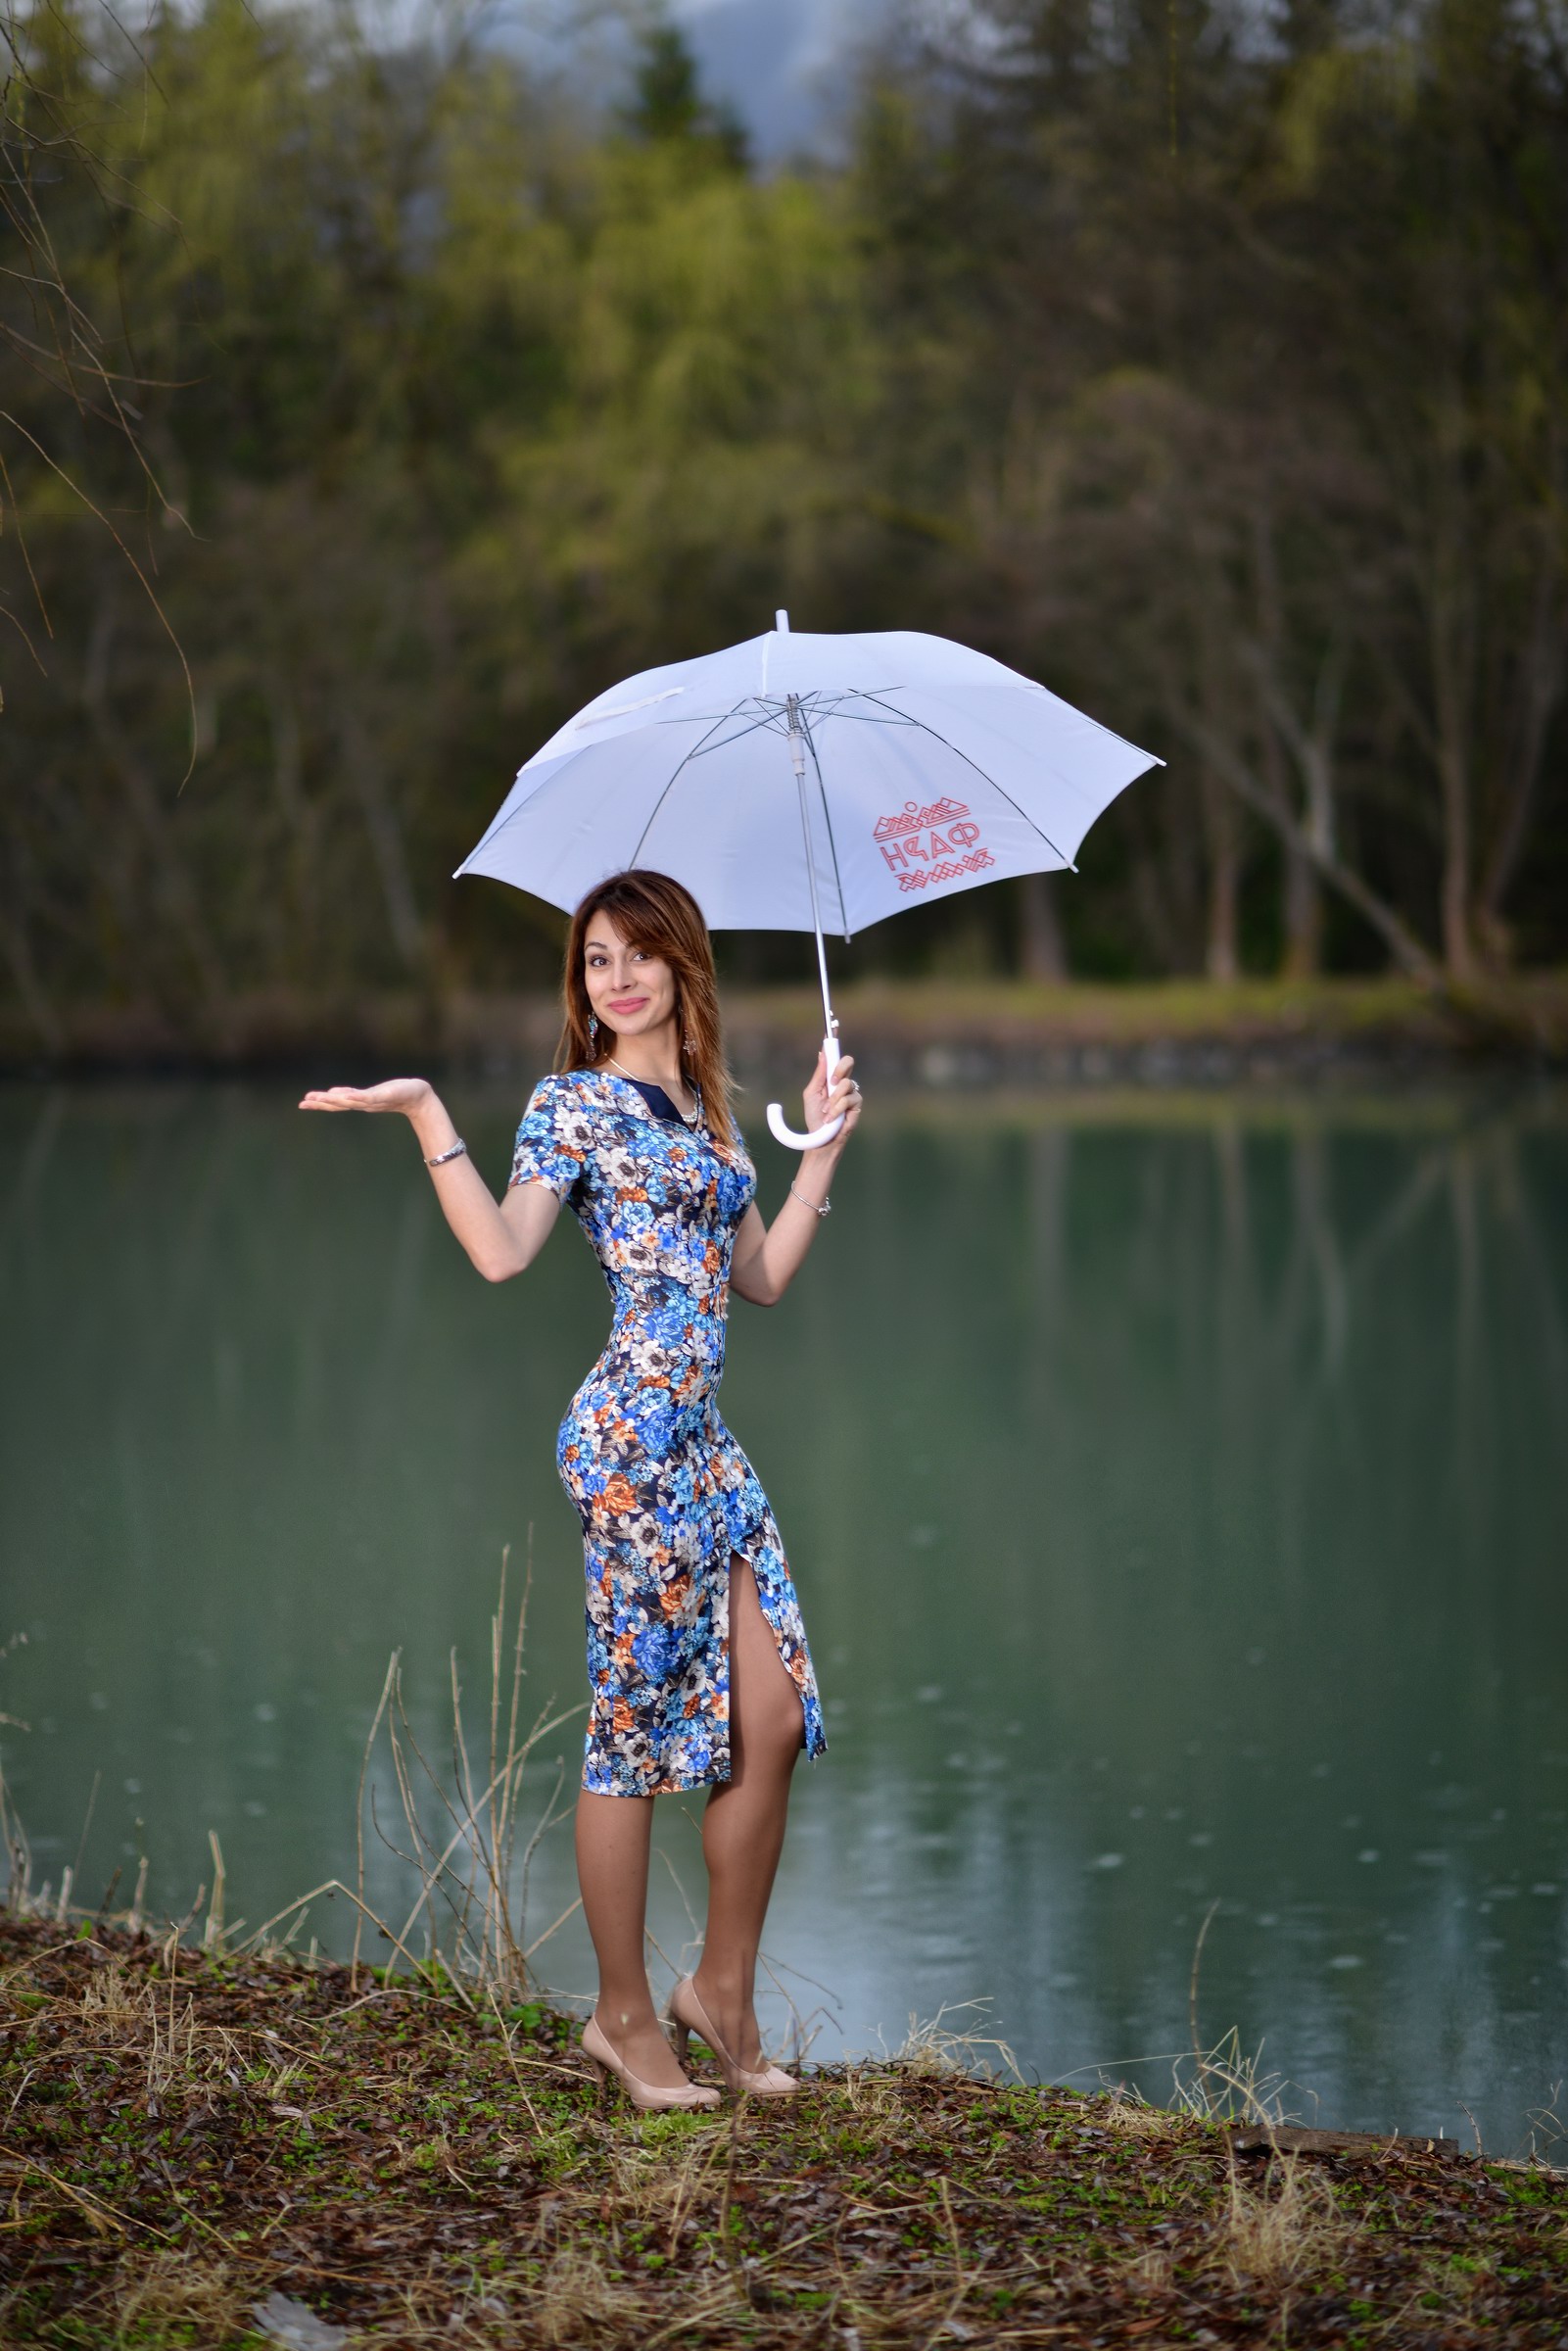 Vladimir Kulakov Women Umbrella Brunette Dress Flower Dress Lake High Heels 1601x2400